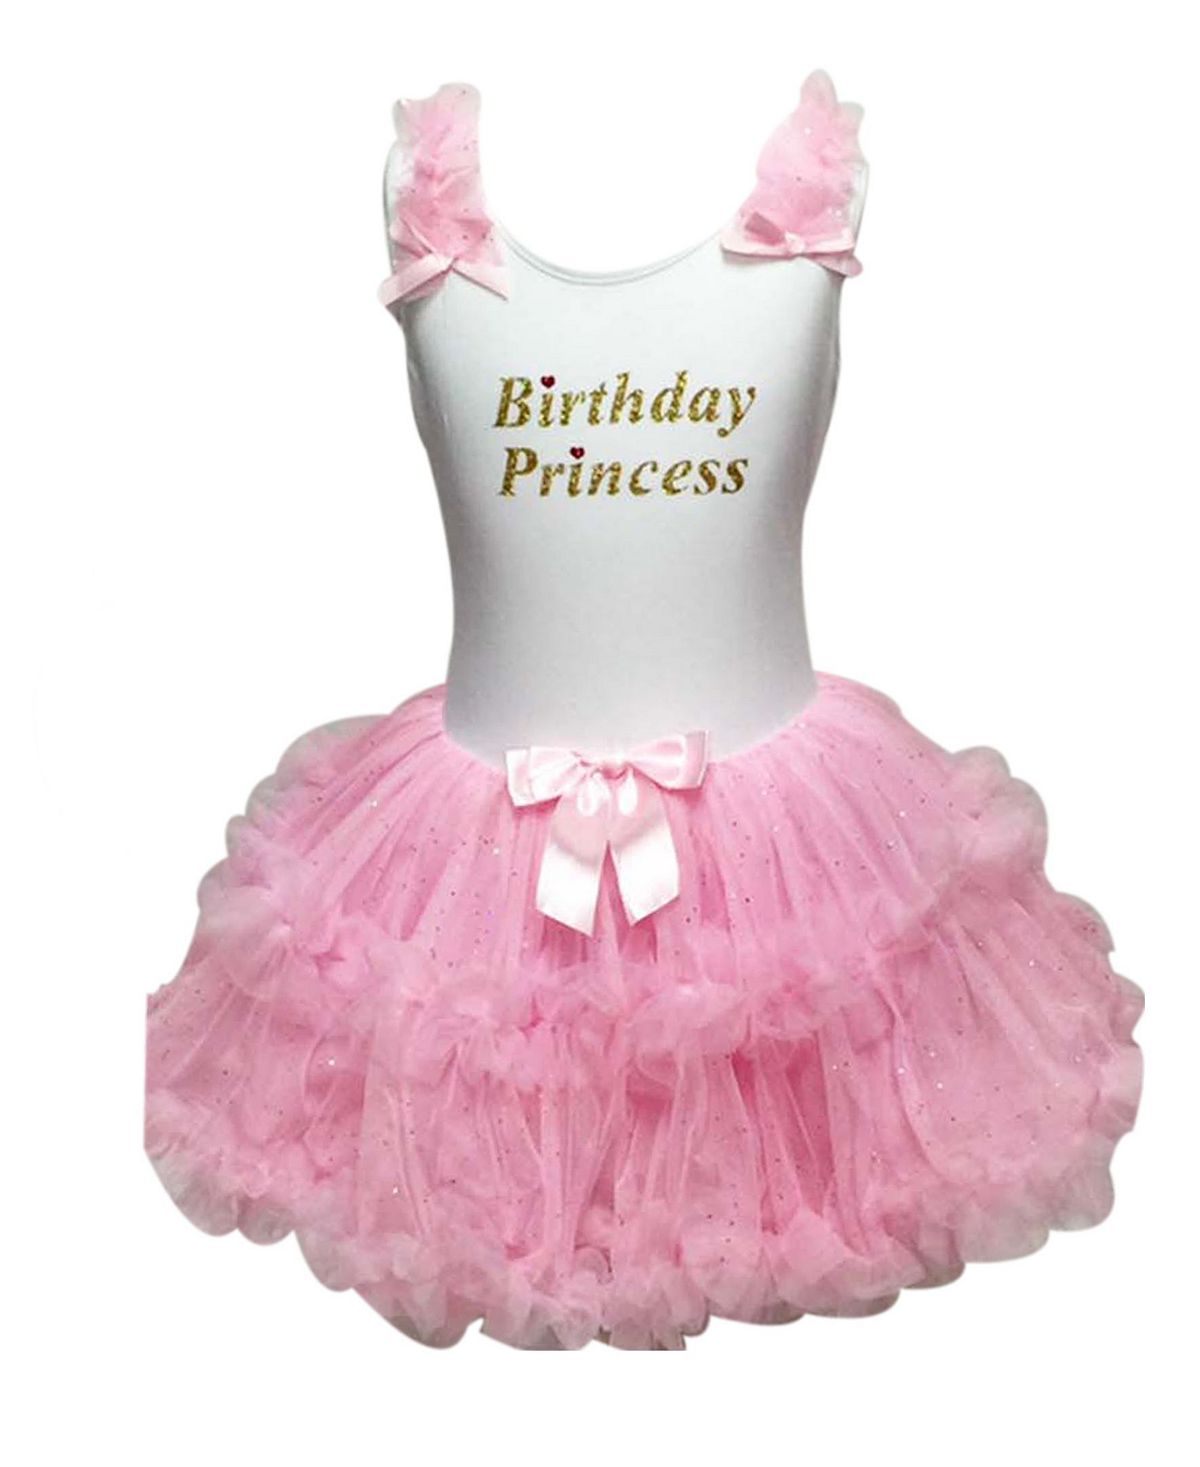 Платье принцессы с рюшами на день рождения для больших девочек Popatu мягкое хлопковое платье принцессы покахонтас для девочек косплей на хэллоуин день рождения вечерние вечеринку повседневный игровой кост